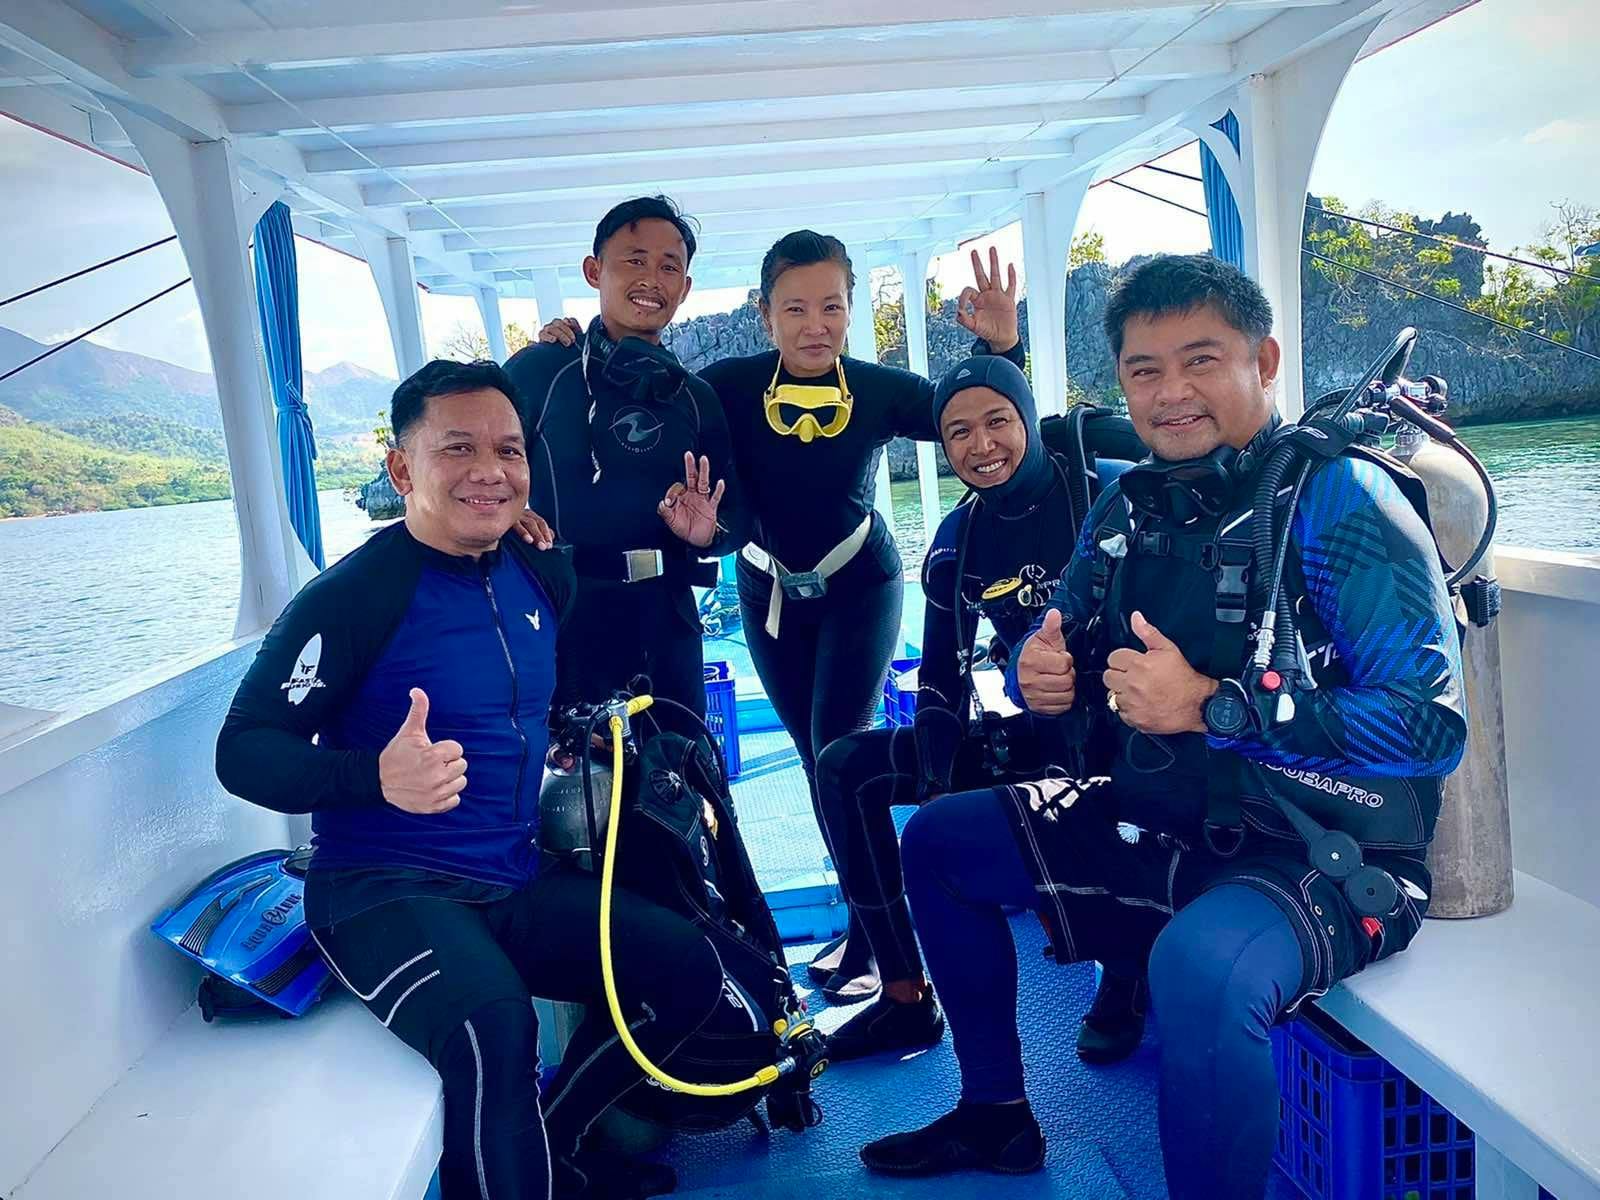 Diving Instructors of Skylodge Resort Dive Shop